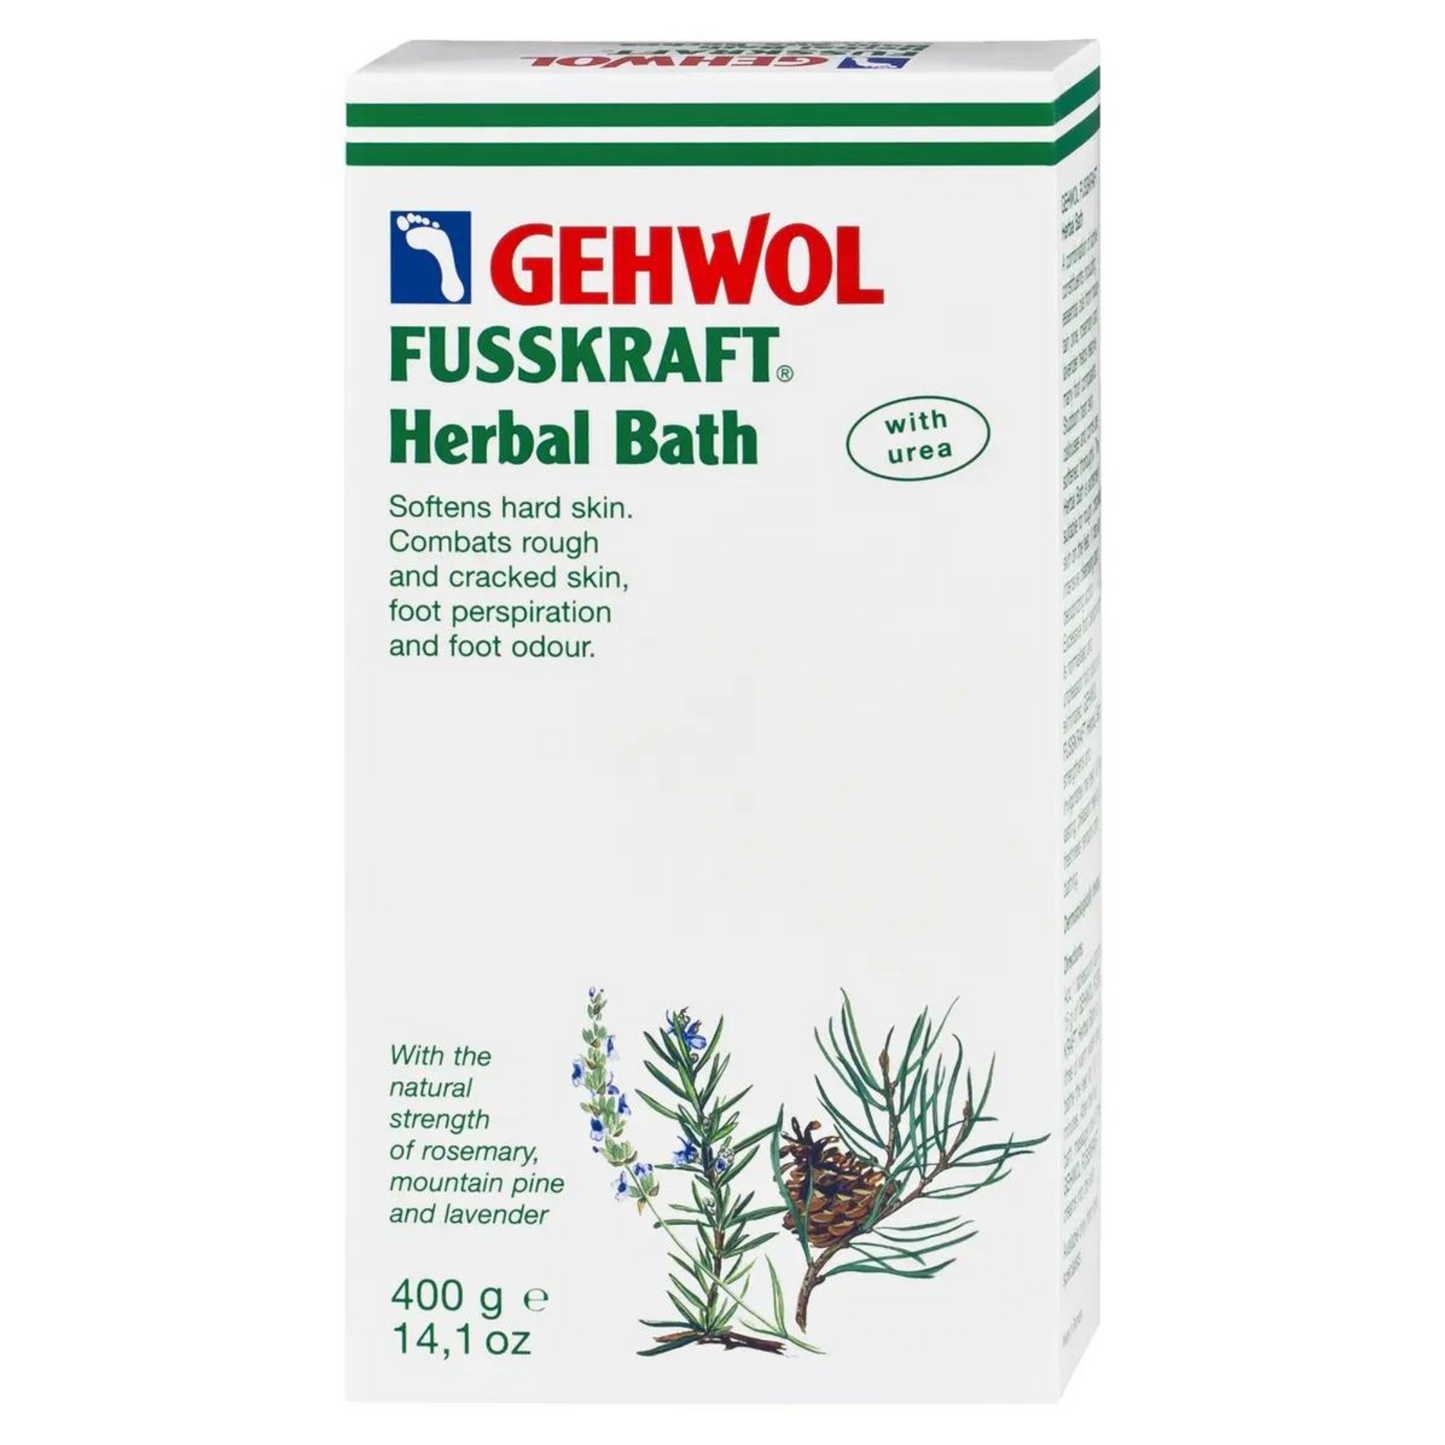 Primary Image of Gehwol Fusskraft Herbal Foot Bath (400 g)